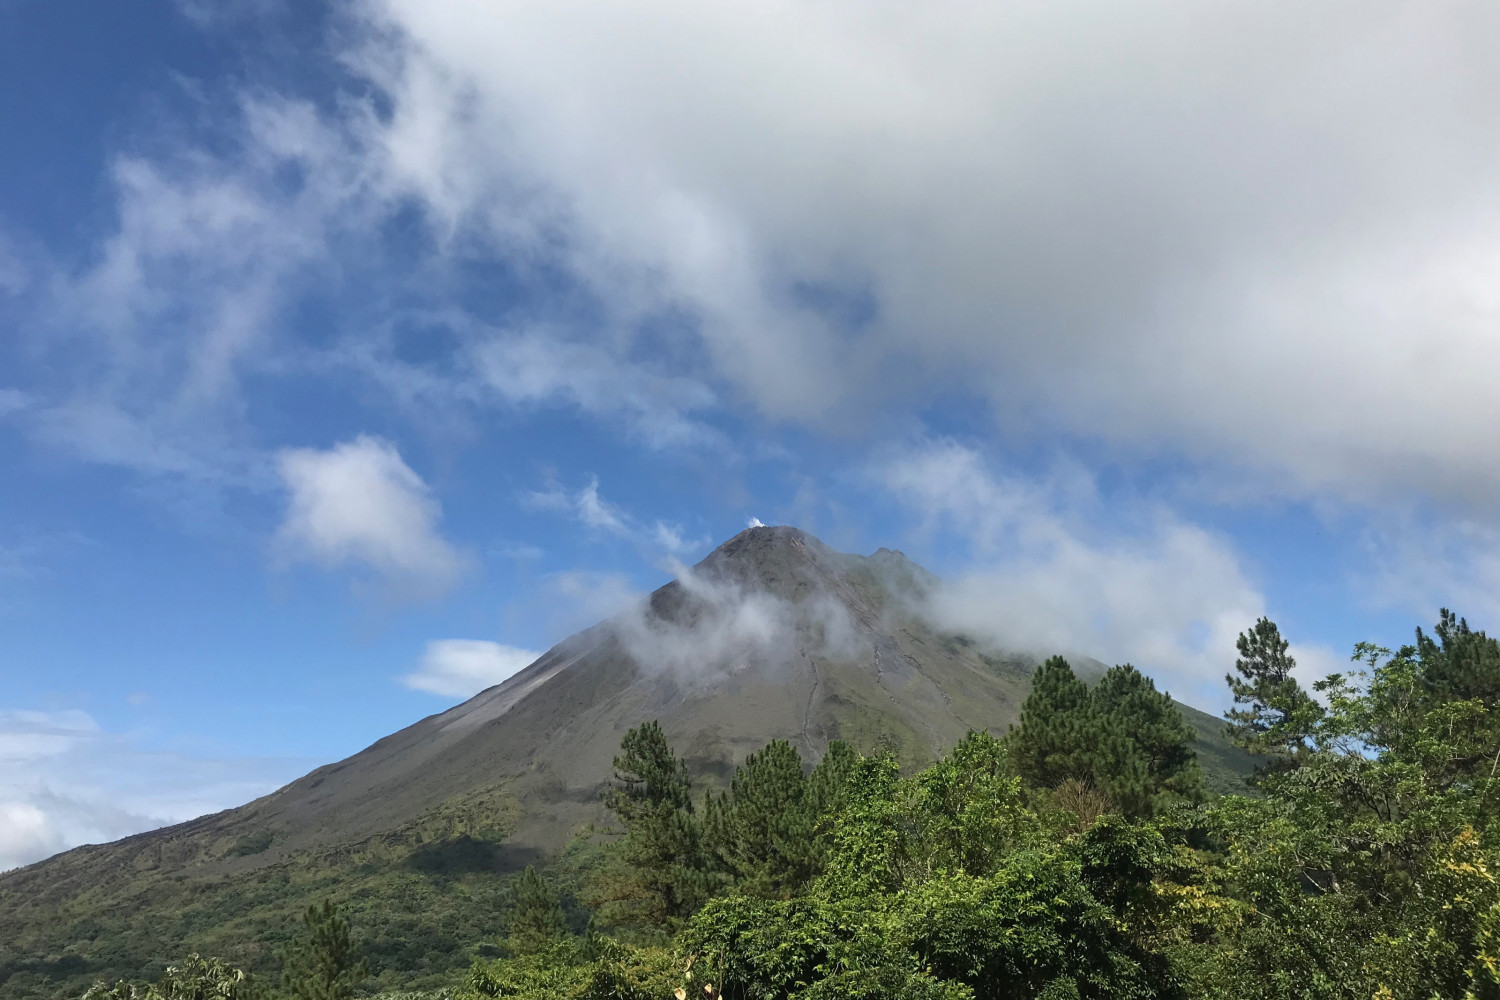 A volcano in Costa Rica